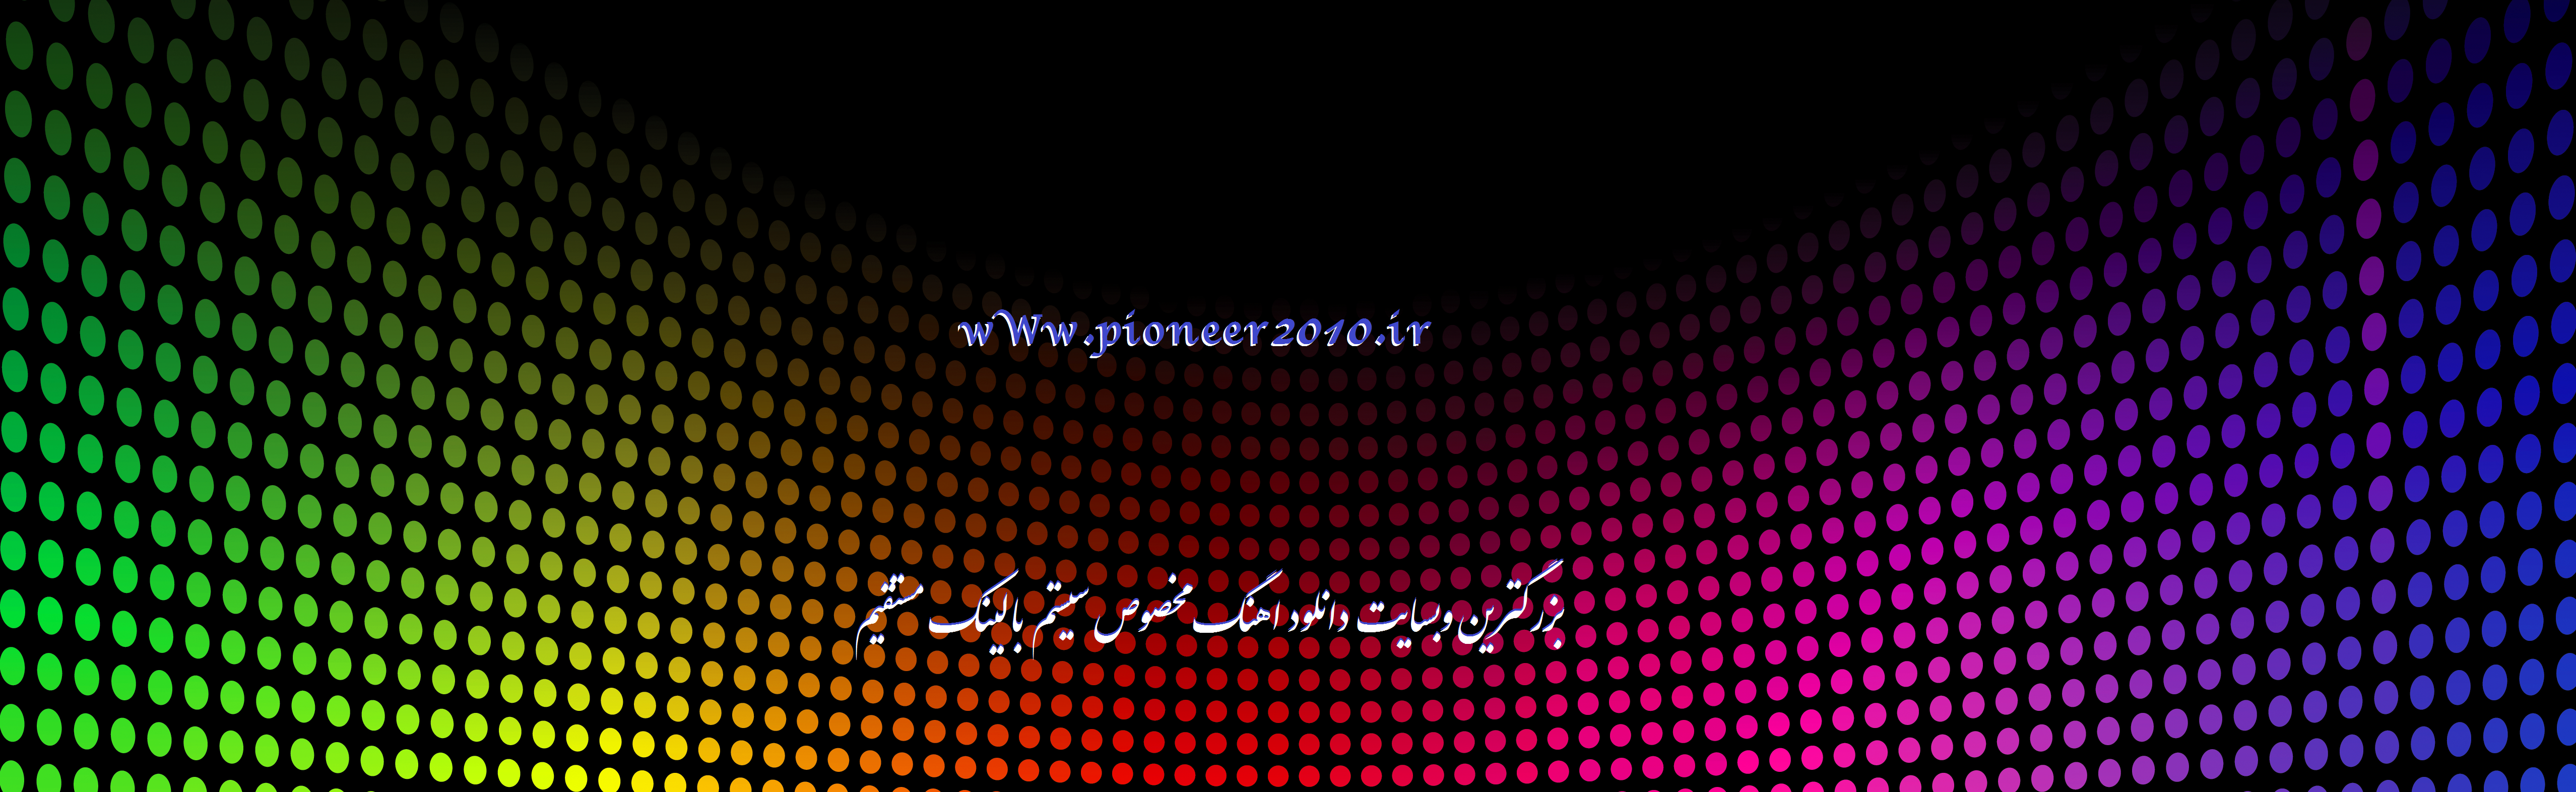 دانلود بیس ویبره خارجی مخصوص تست ساب با بیس بالا  / لینک مستقیم  |wWw.pioneer2010.ir